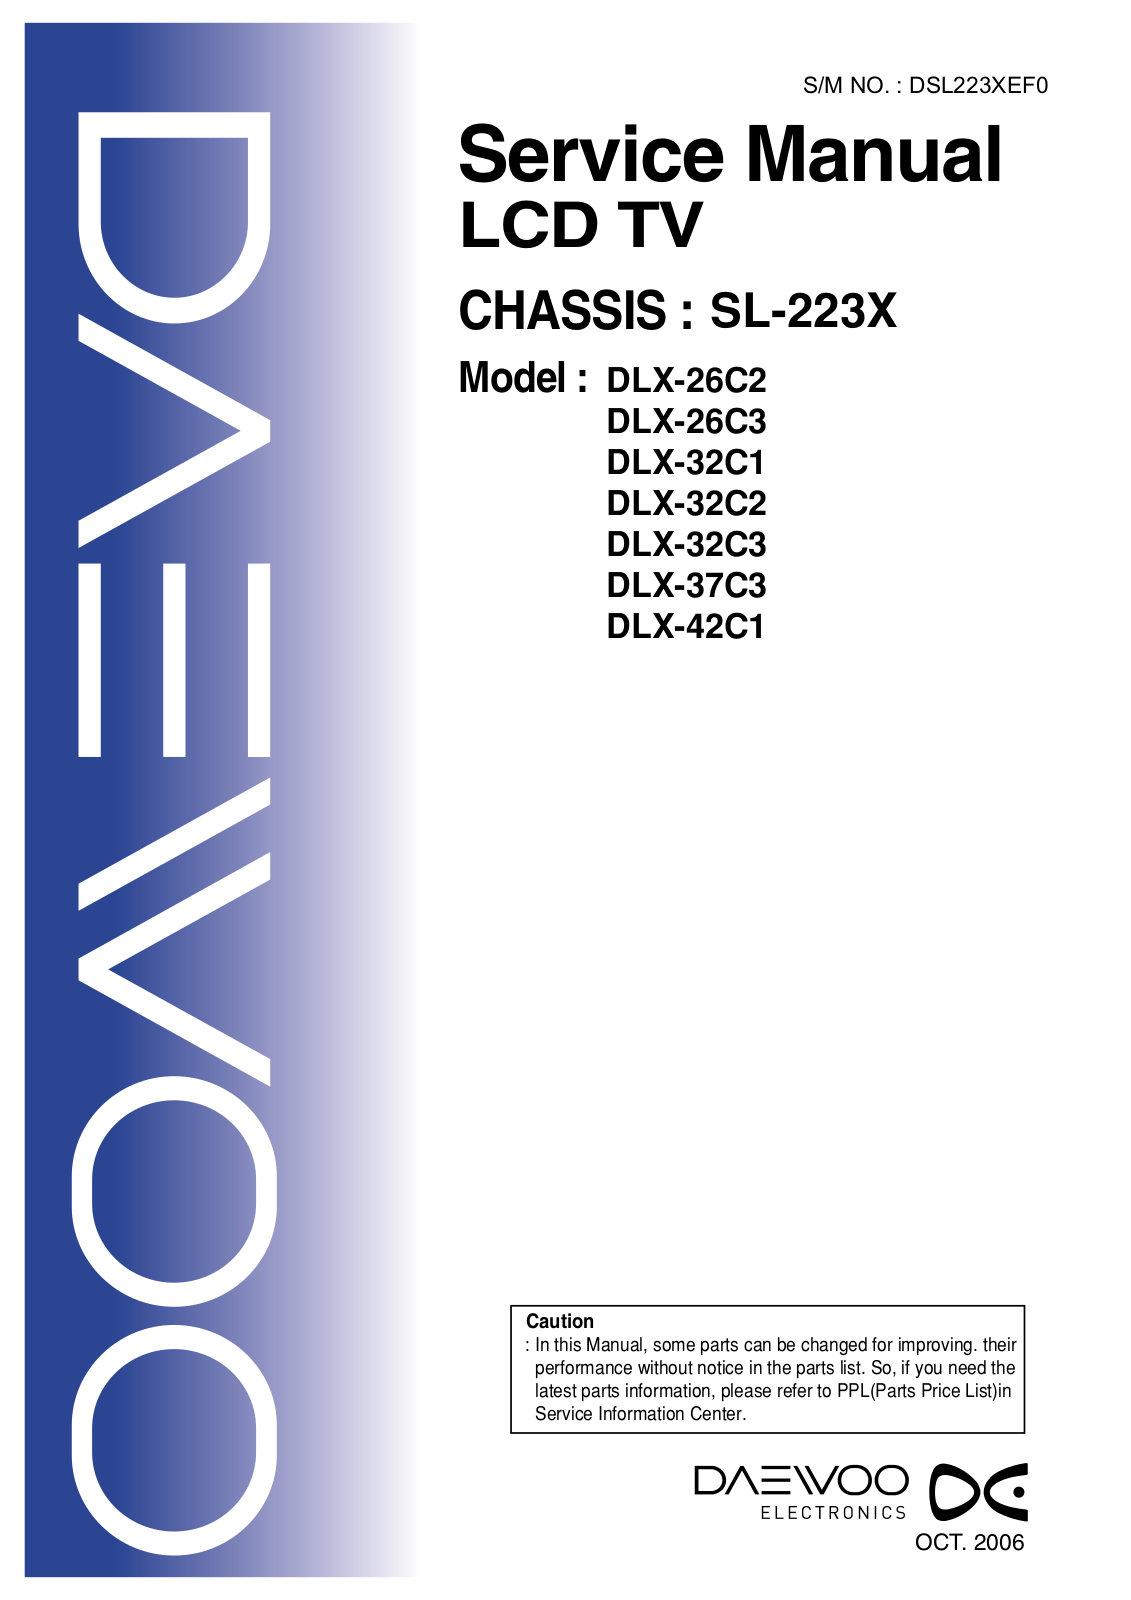 Daewoo DLX-26C2, DLX-26C3, DLX-32C1, DLX-32C2, DLX-32C3 Service Manual